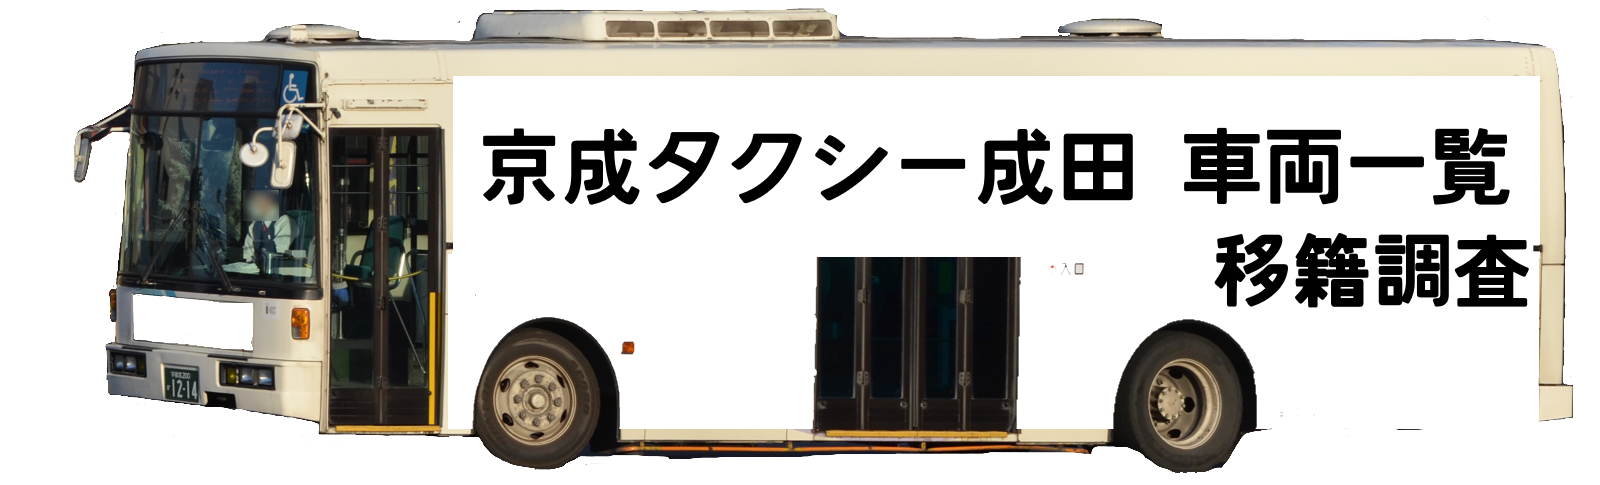 ちばこうバス (京成タクシー成田)車両一覧・移籍調査